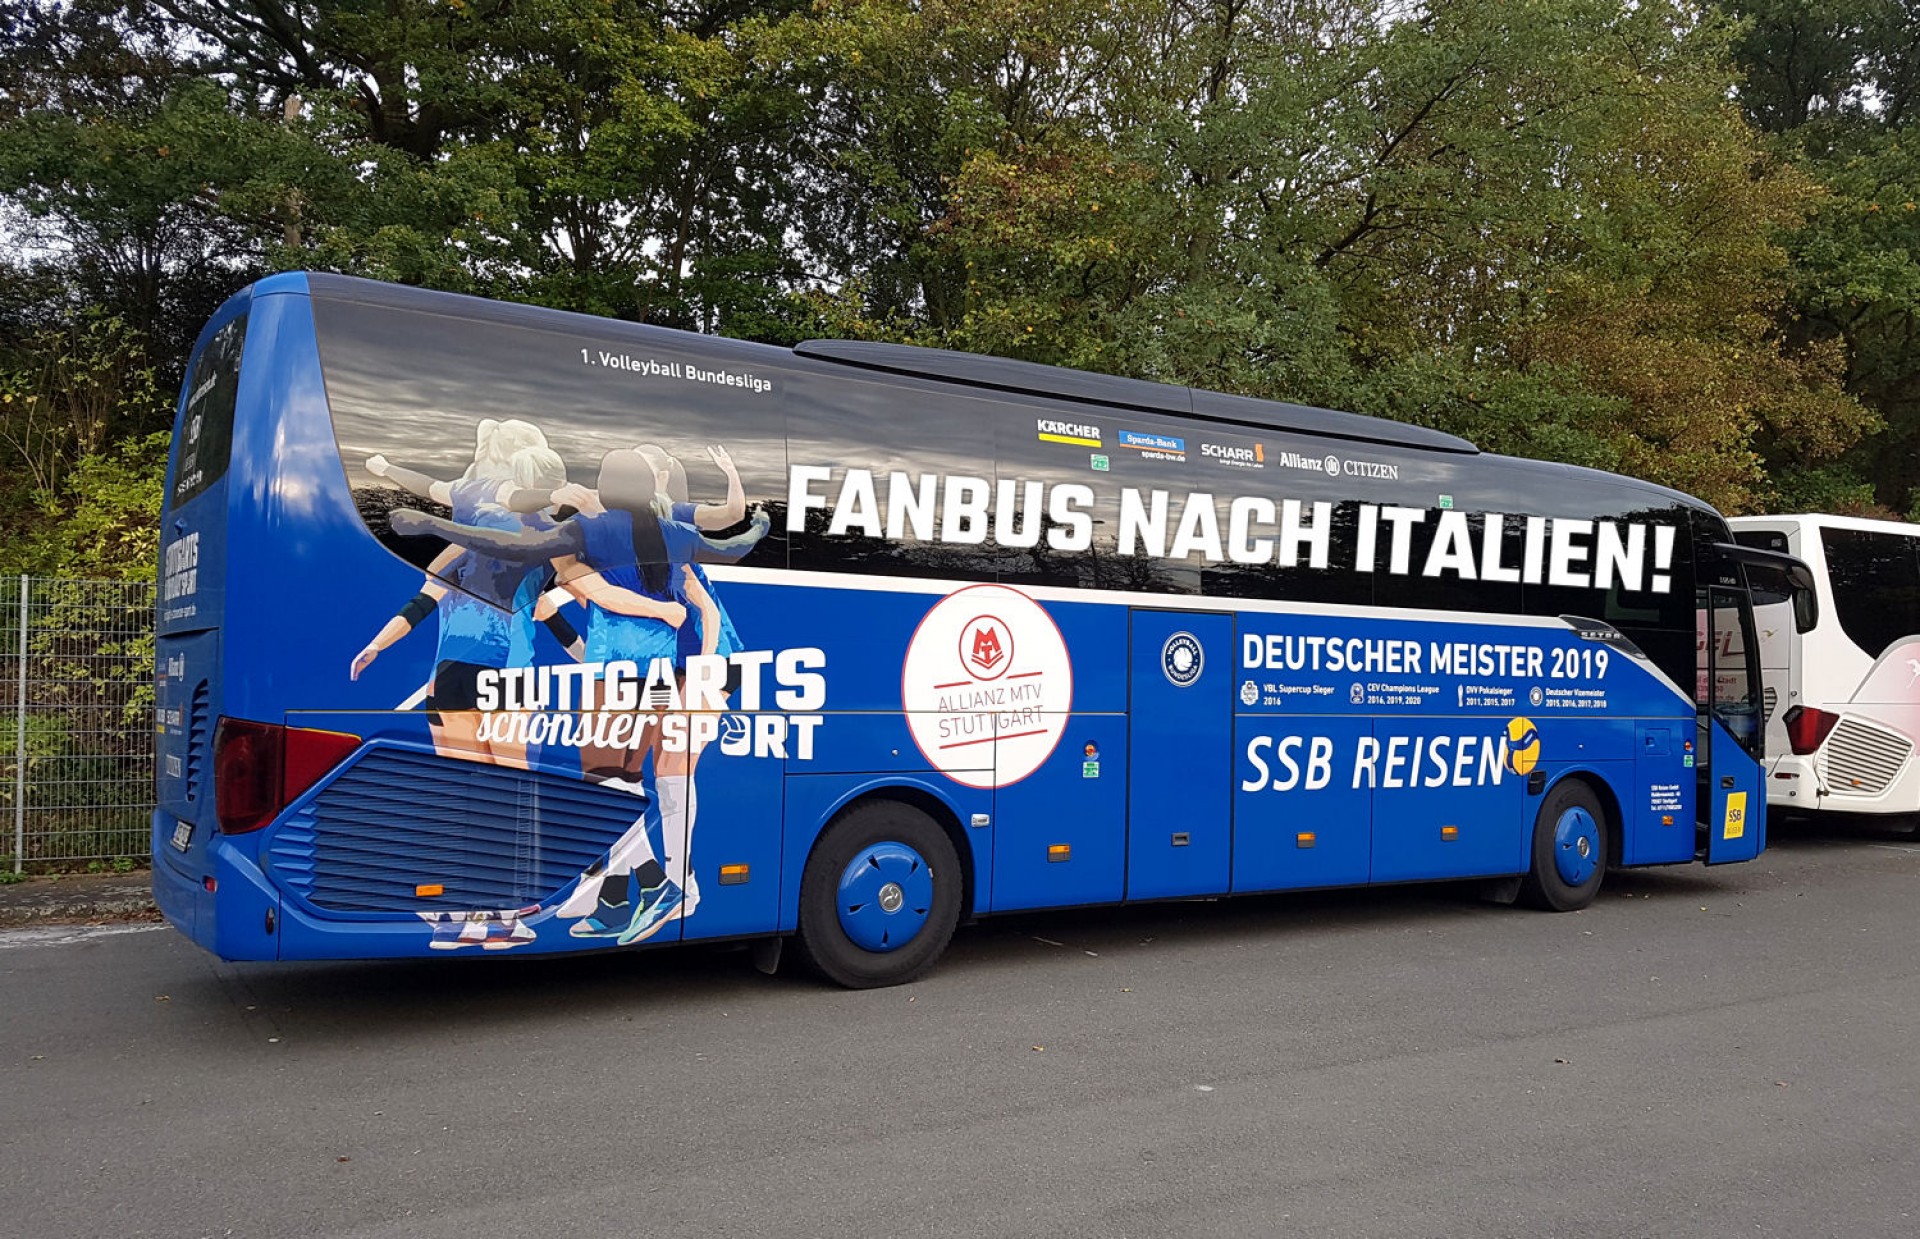 Die Fans im Rücken, auch in Italien! | Foto: Markus O. Robold